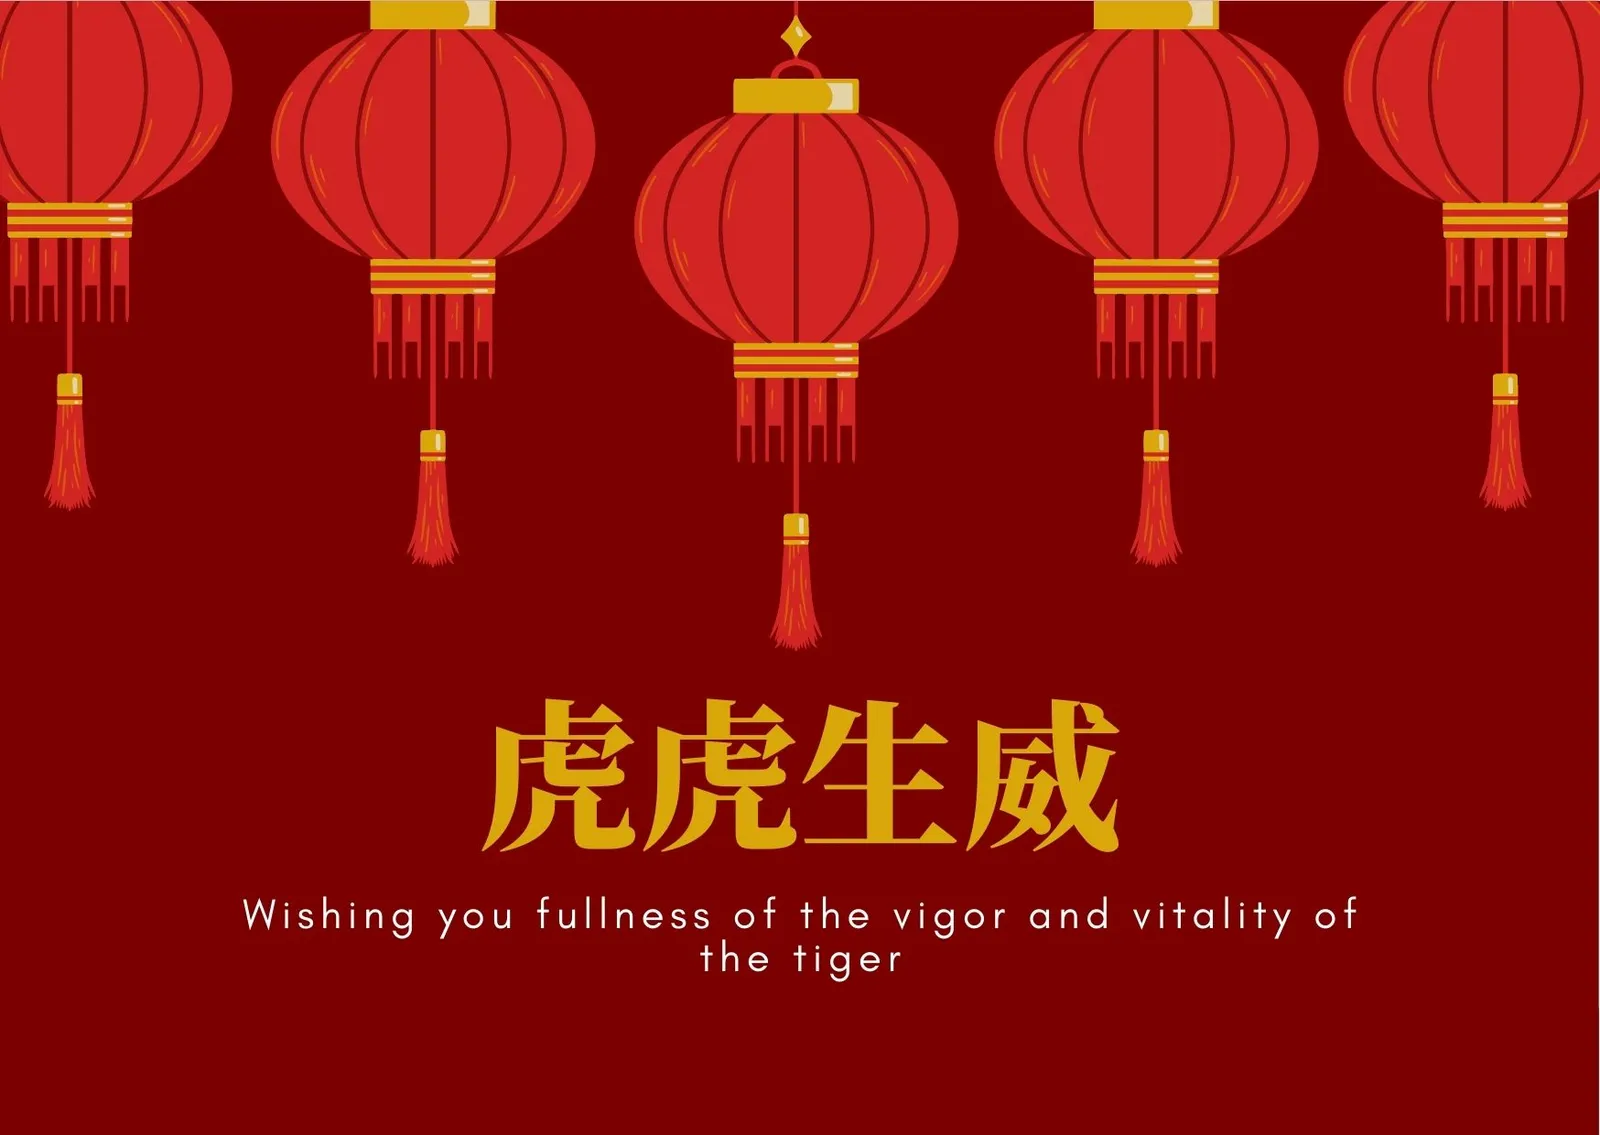 Penuh Doa, 10 Ucapan Selamat Tahun Baru Imlek dalam Bahasa Mandarin